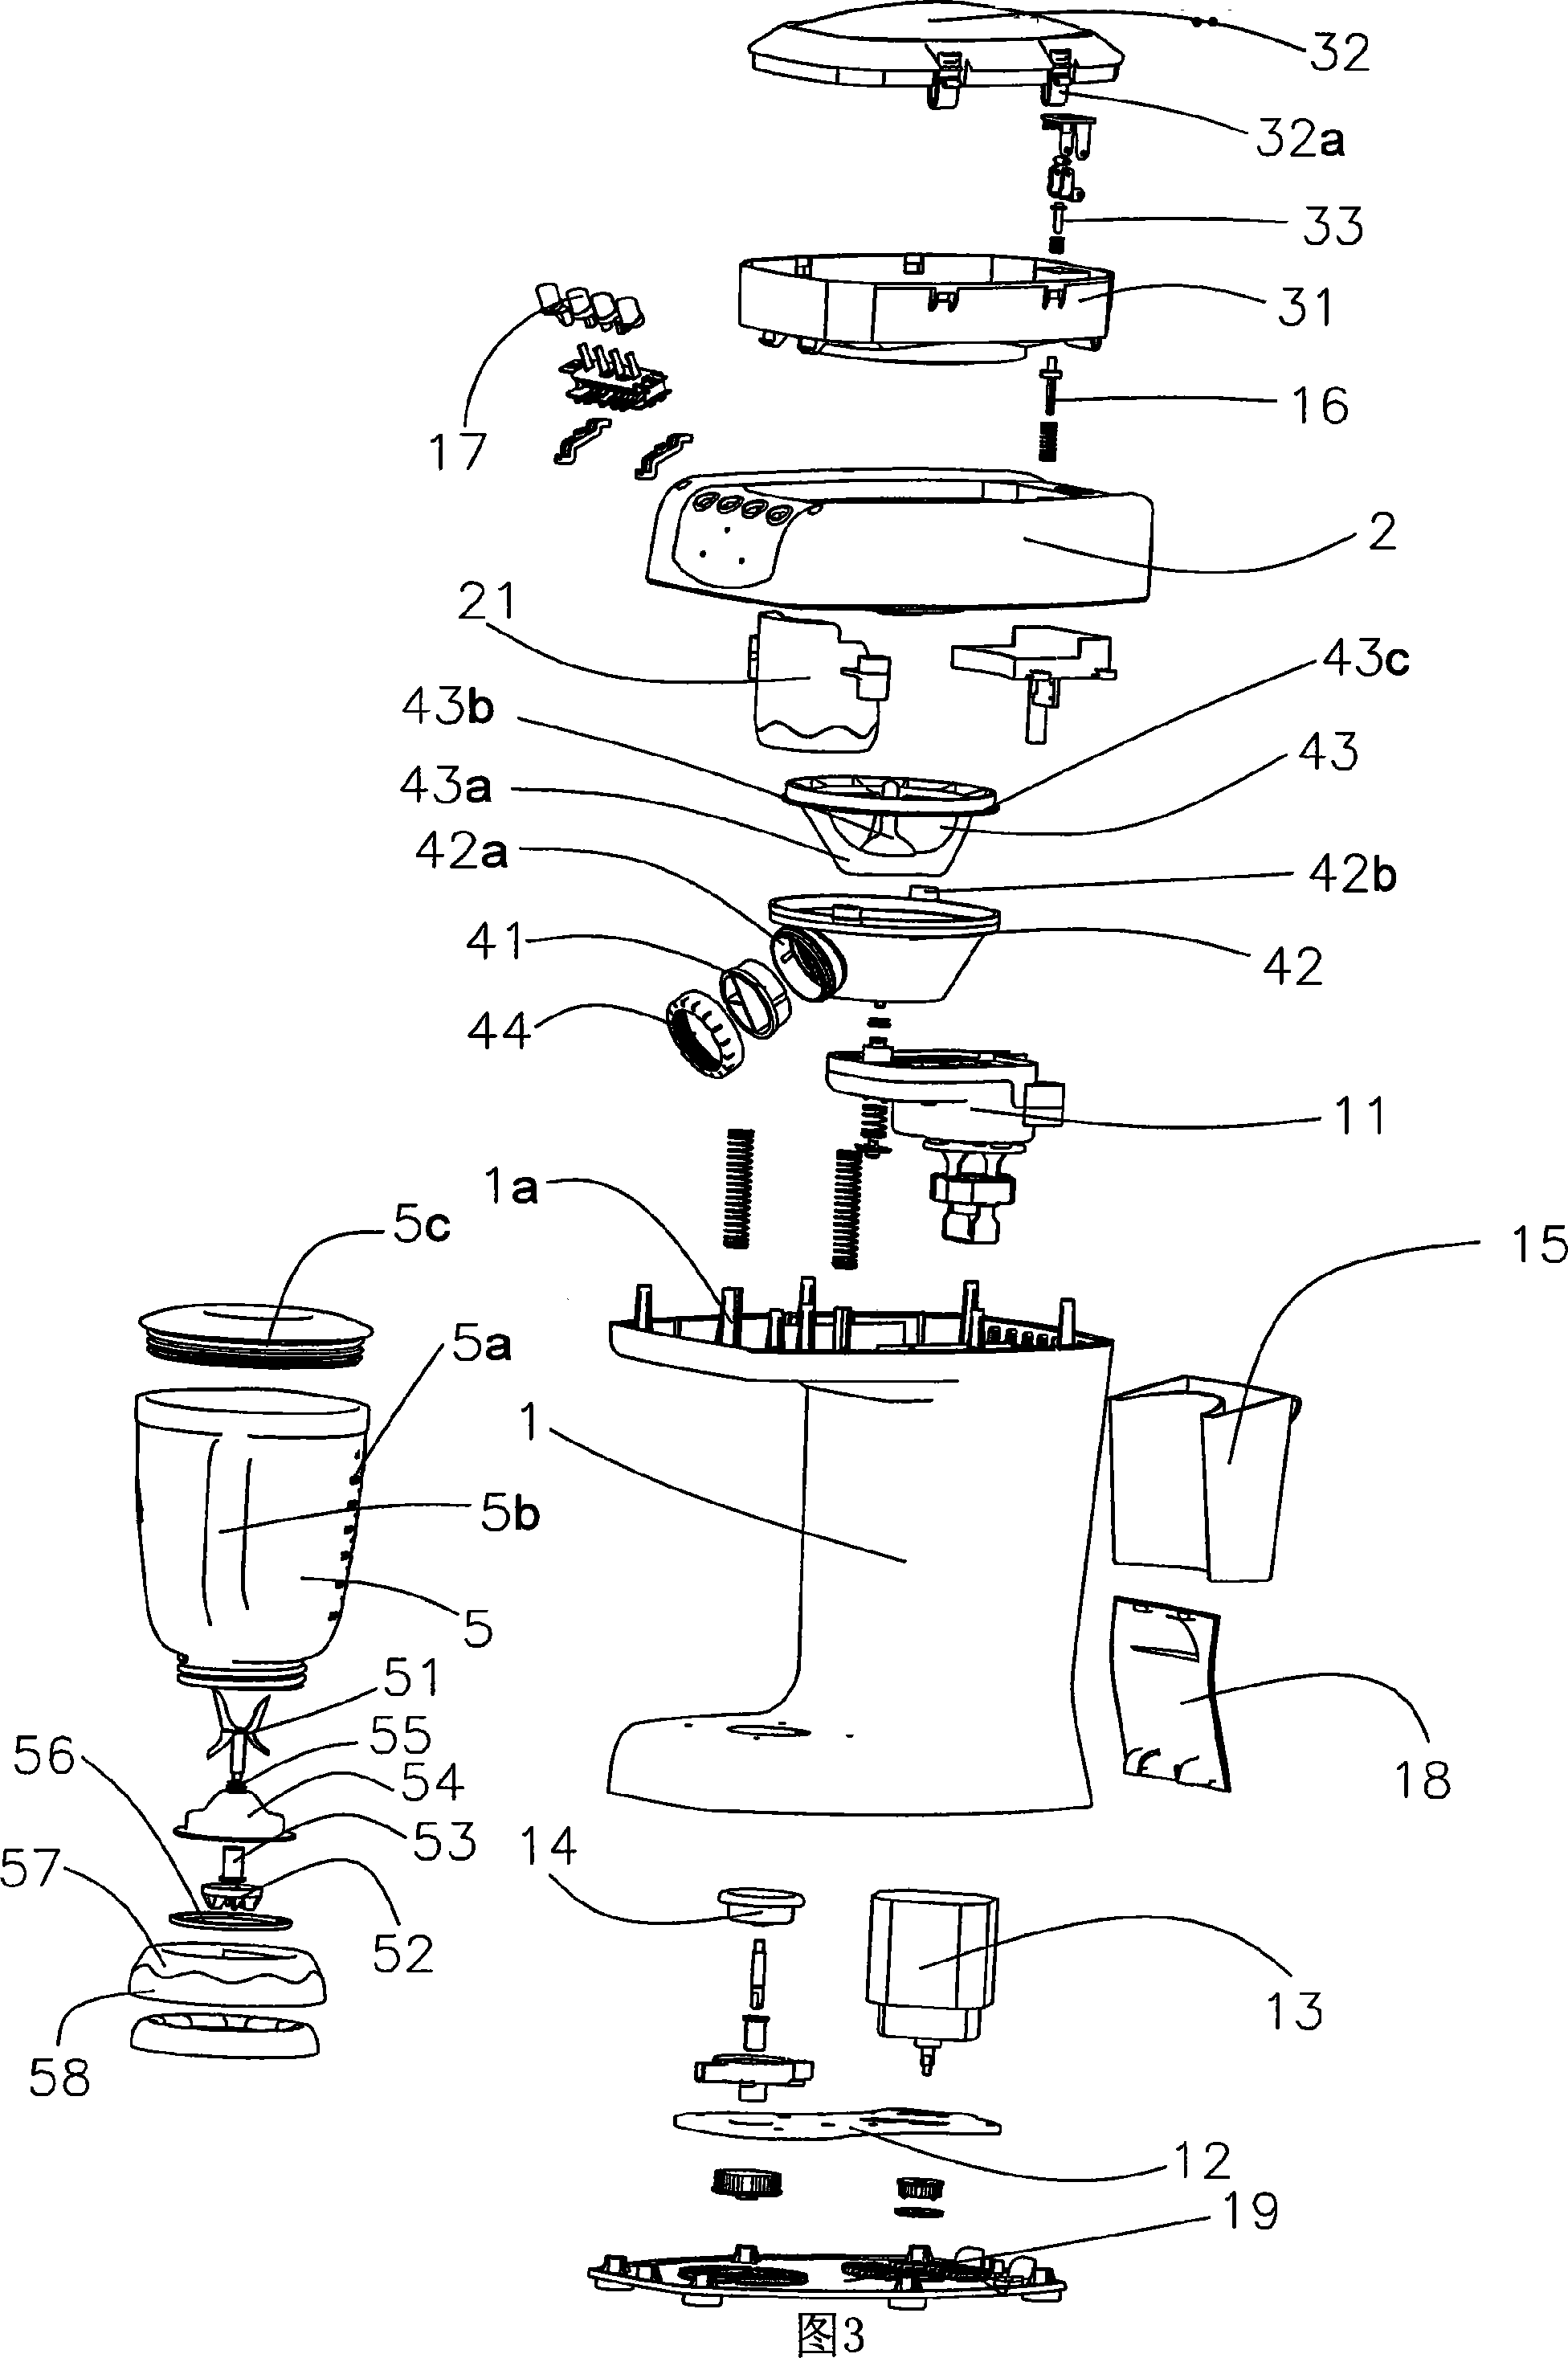 Double-motor type ice-breaking mixer